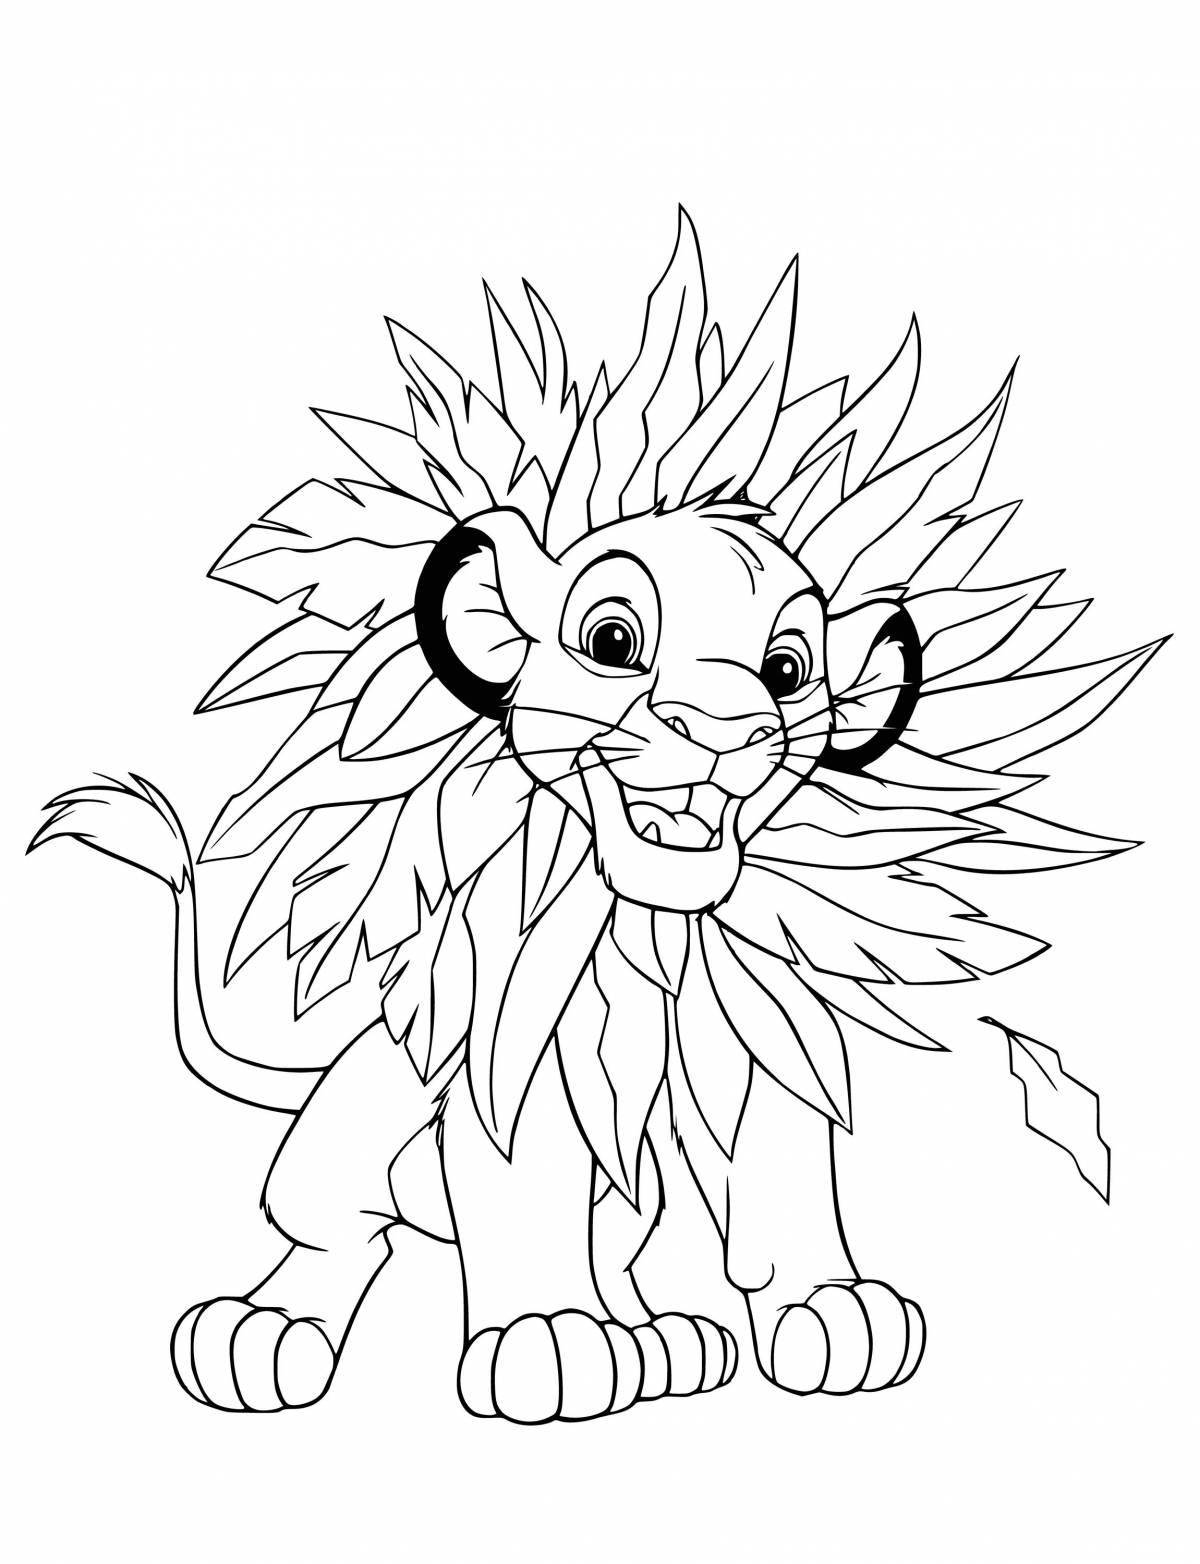 Coloring cute lion cub